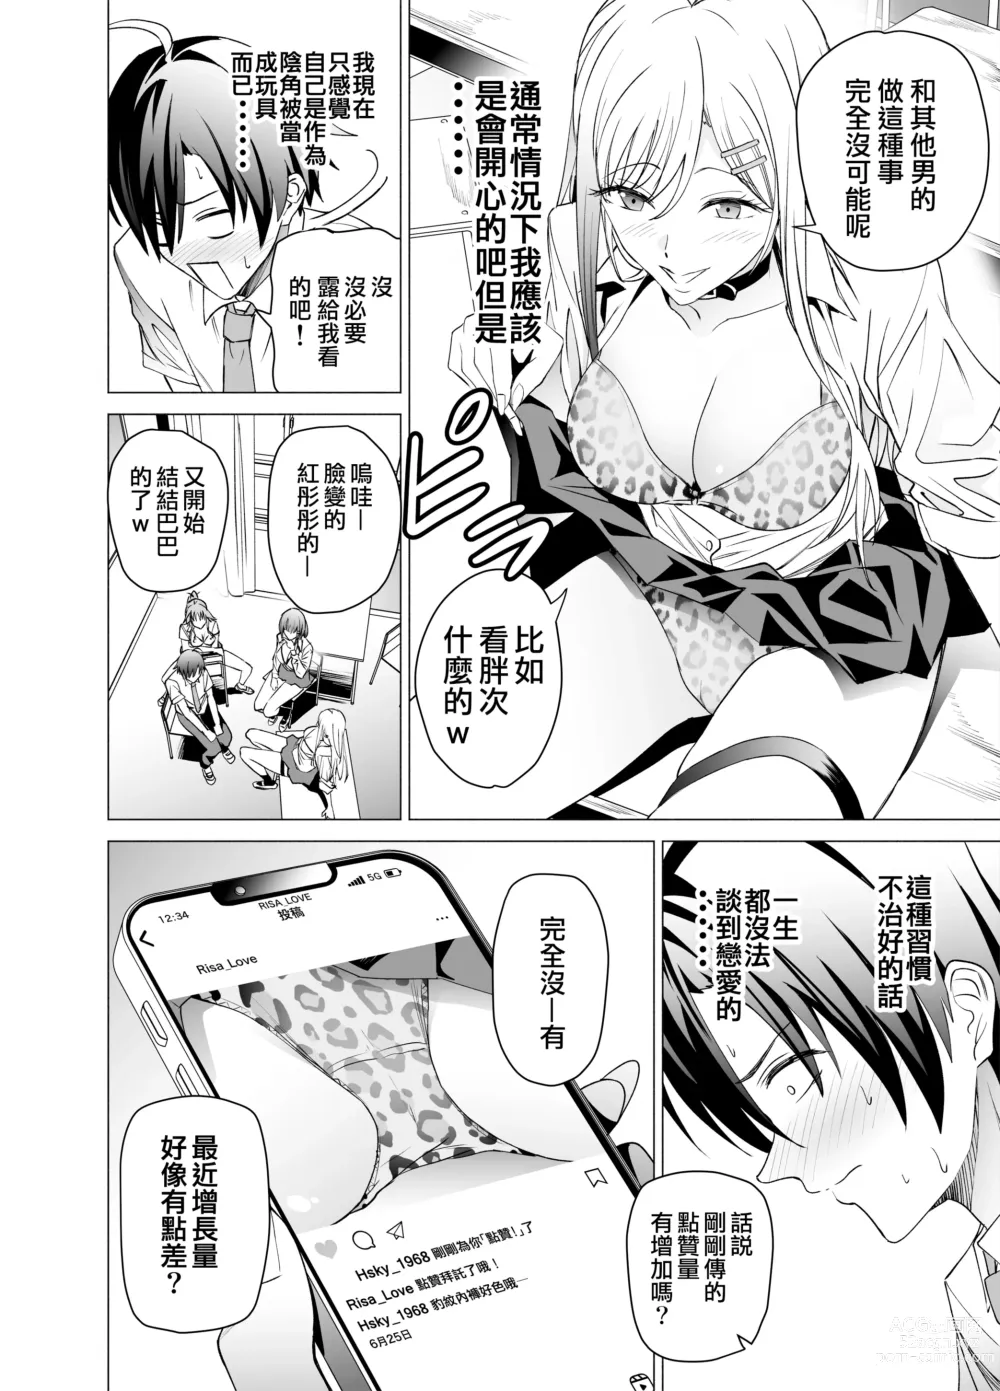 Page 8 of doujinshi 色情SNS的點贊量為目的而向你靠過來的辣妹的故事